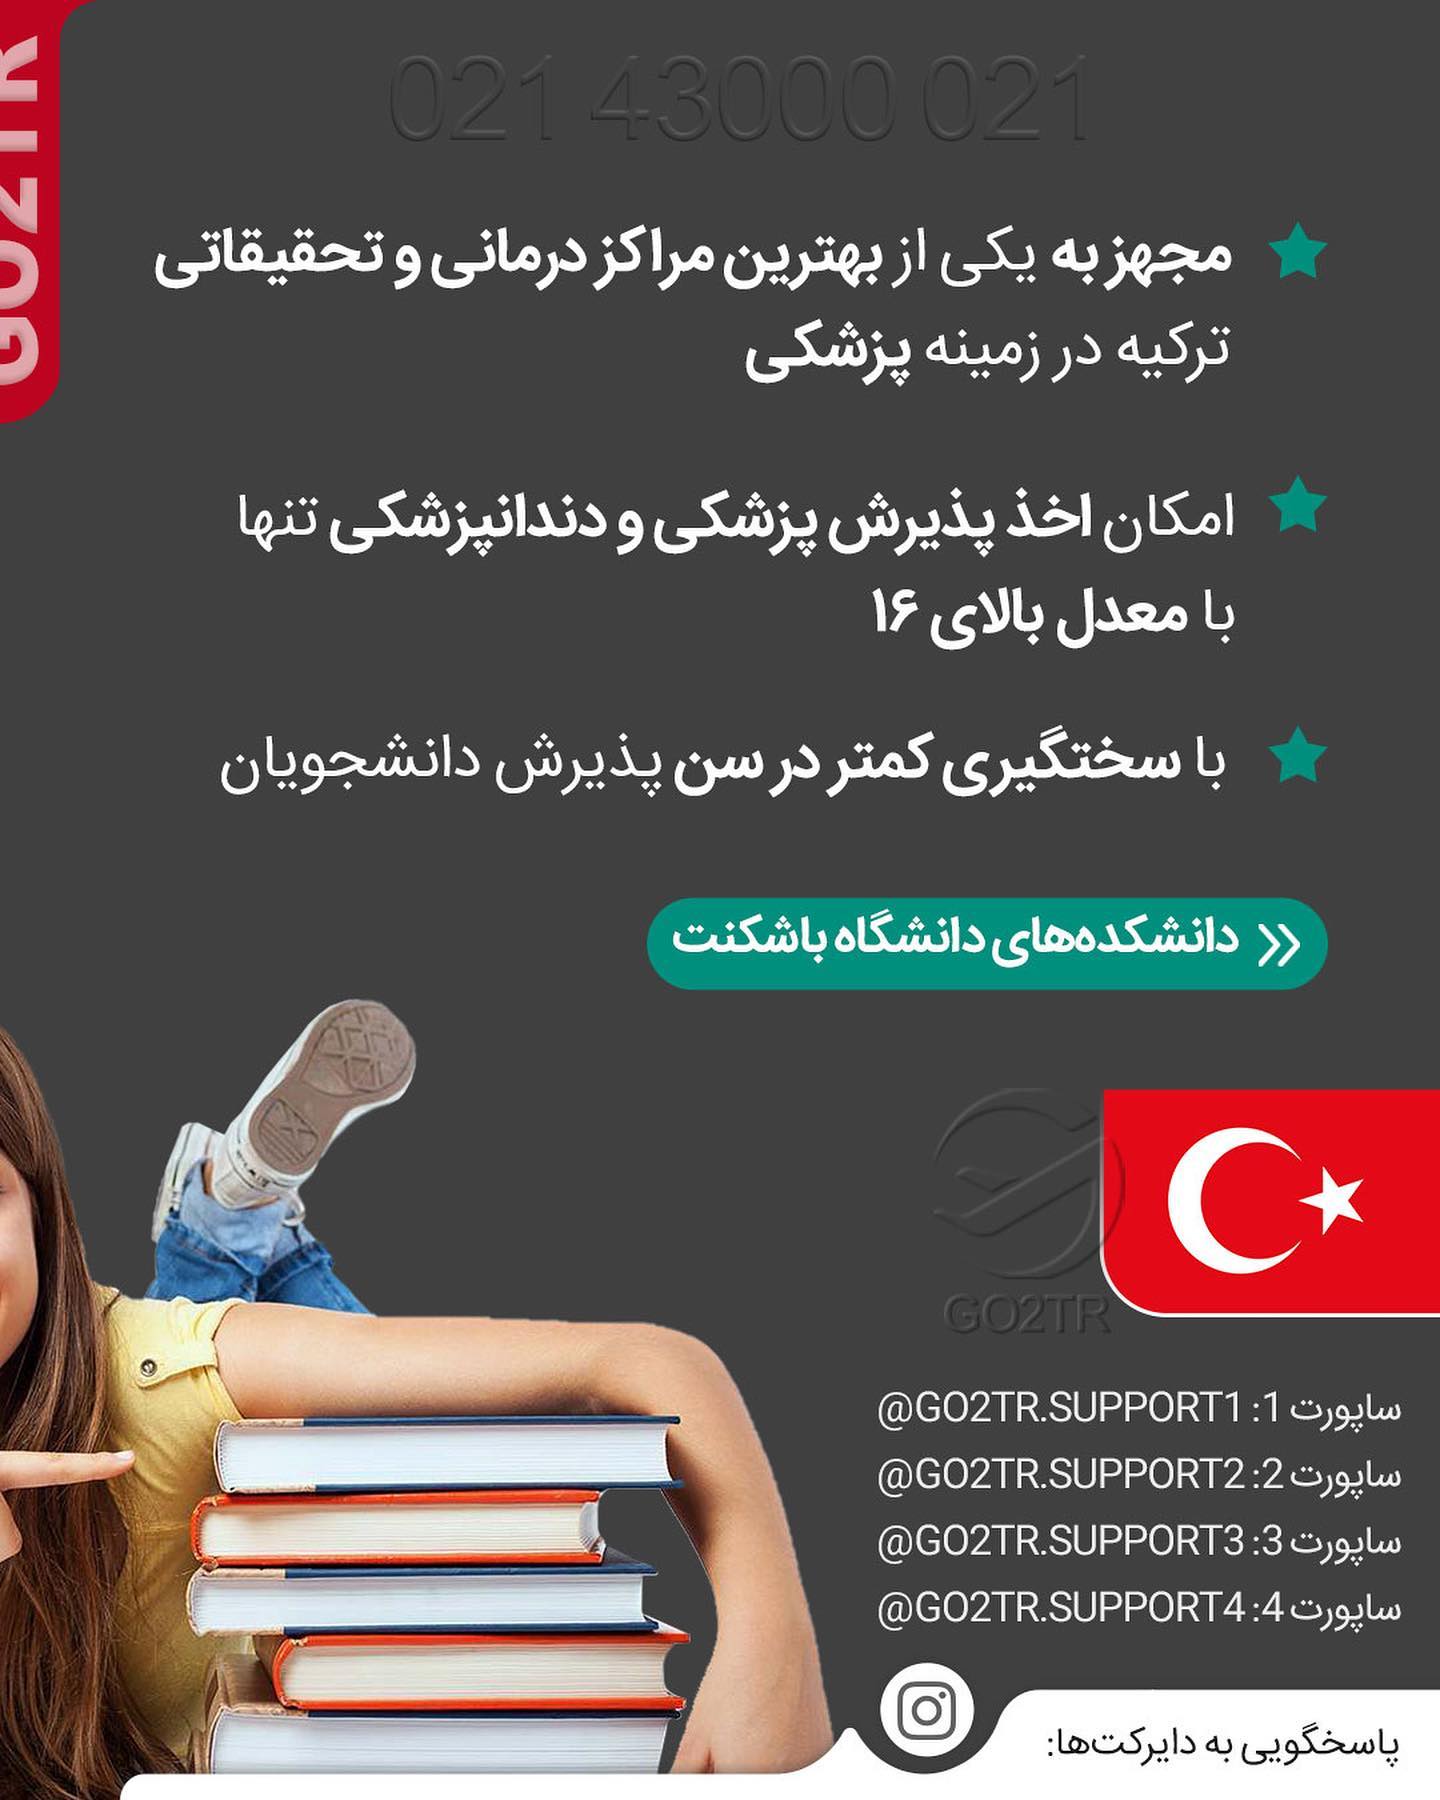 چرا اکثرا تحصیل در ترکیه رو انتخاب میکنن؟ . • ✔️تجربه نشون داده معمولا کسایی